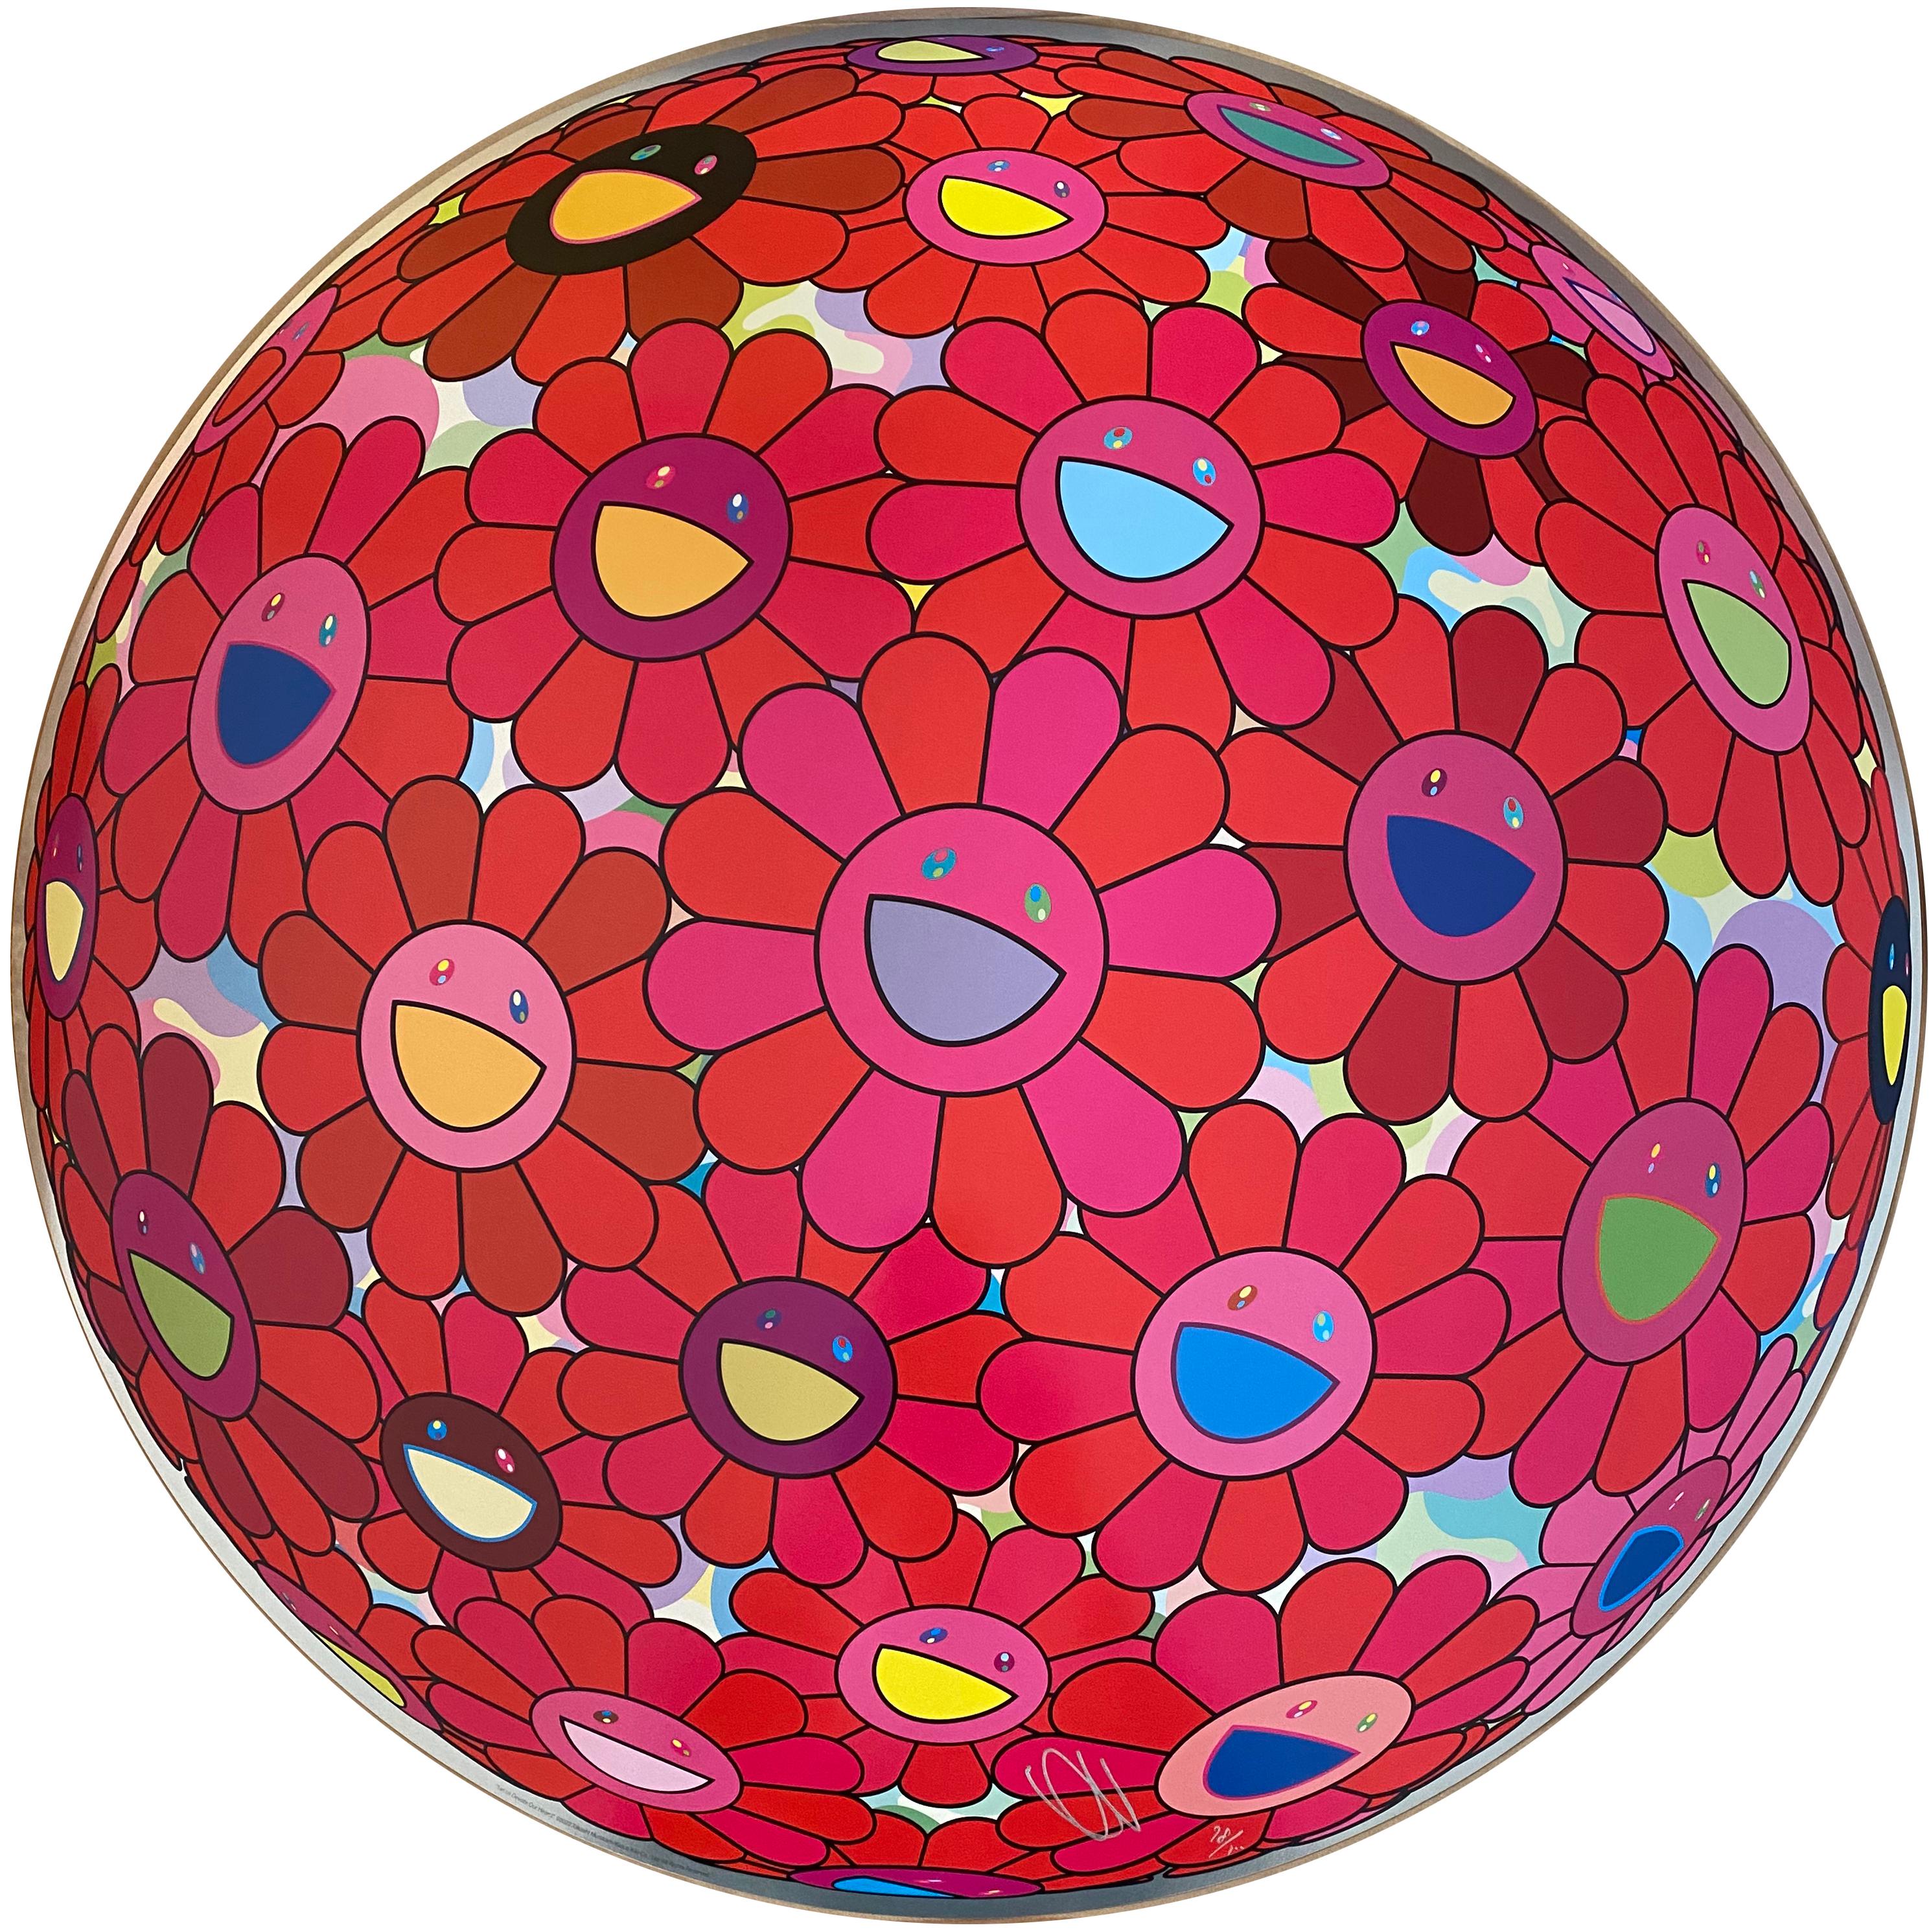 Takashi Murakami, einer der bekanntesten asiatischen Künstler der Nachkriegszeit, ist für seine charakteristische "Superflat"-Ästhetik bekannt: ein farbenfroher, zweidimensionaler Stil, der die Grenze zwischen bildender Kunst und Popkultur